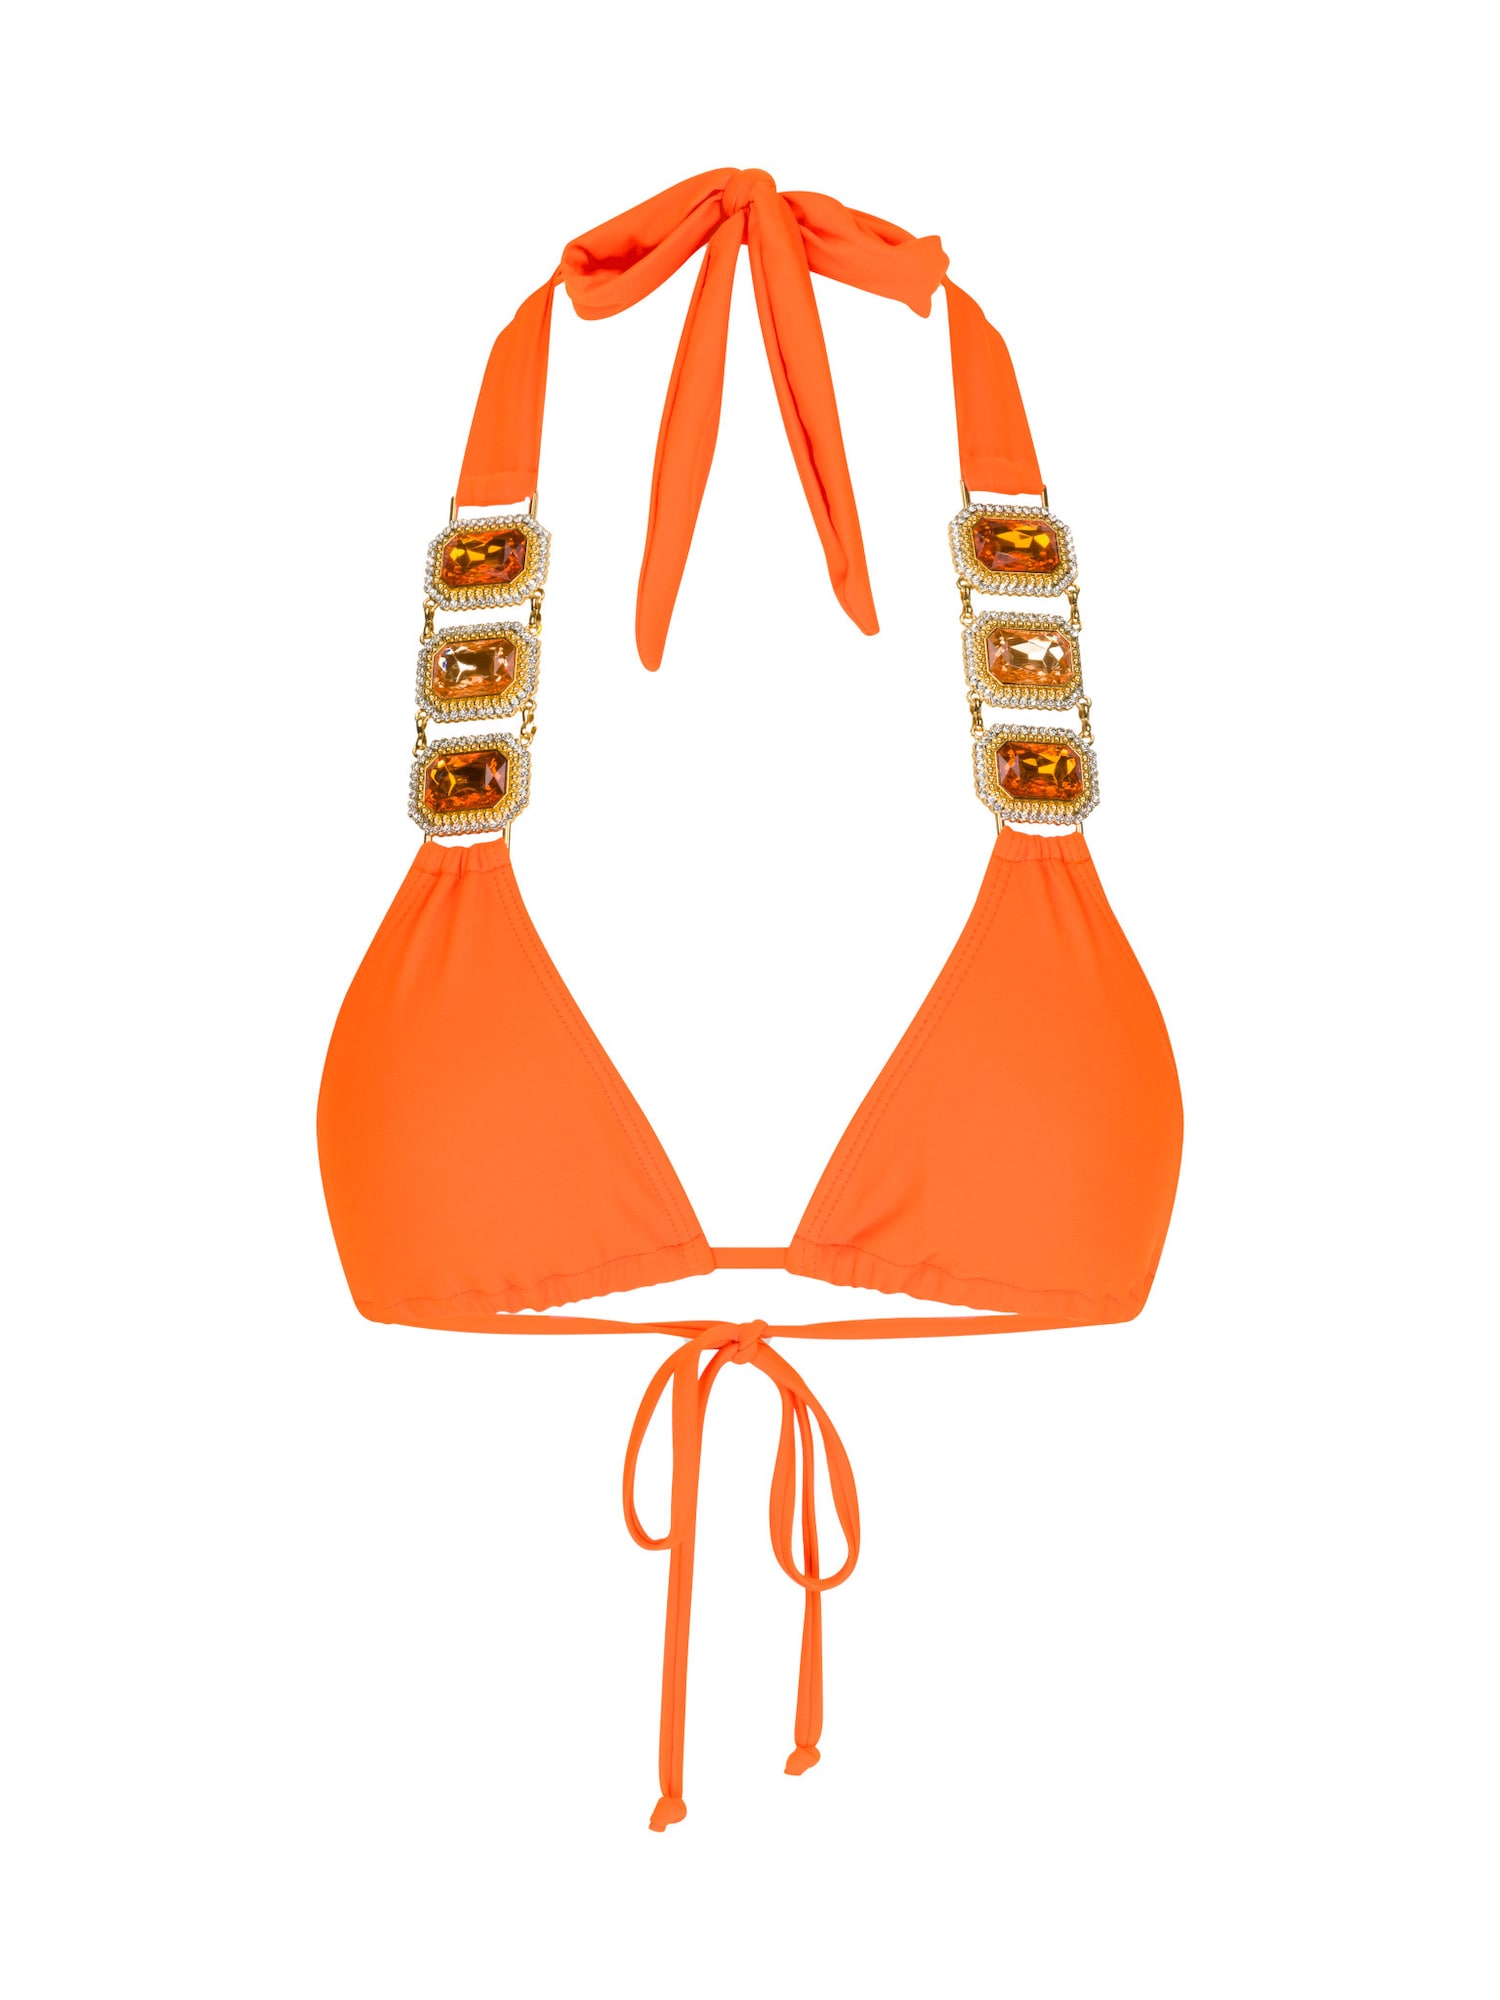 Bikinový top Boujee zlatá oranžová priehľadná Moda Minx